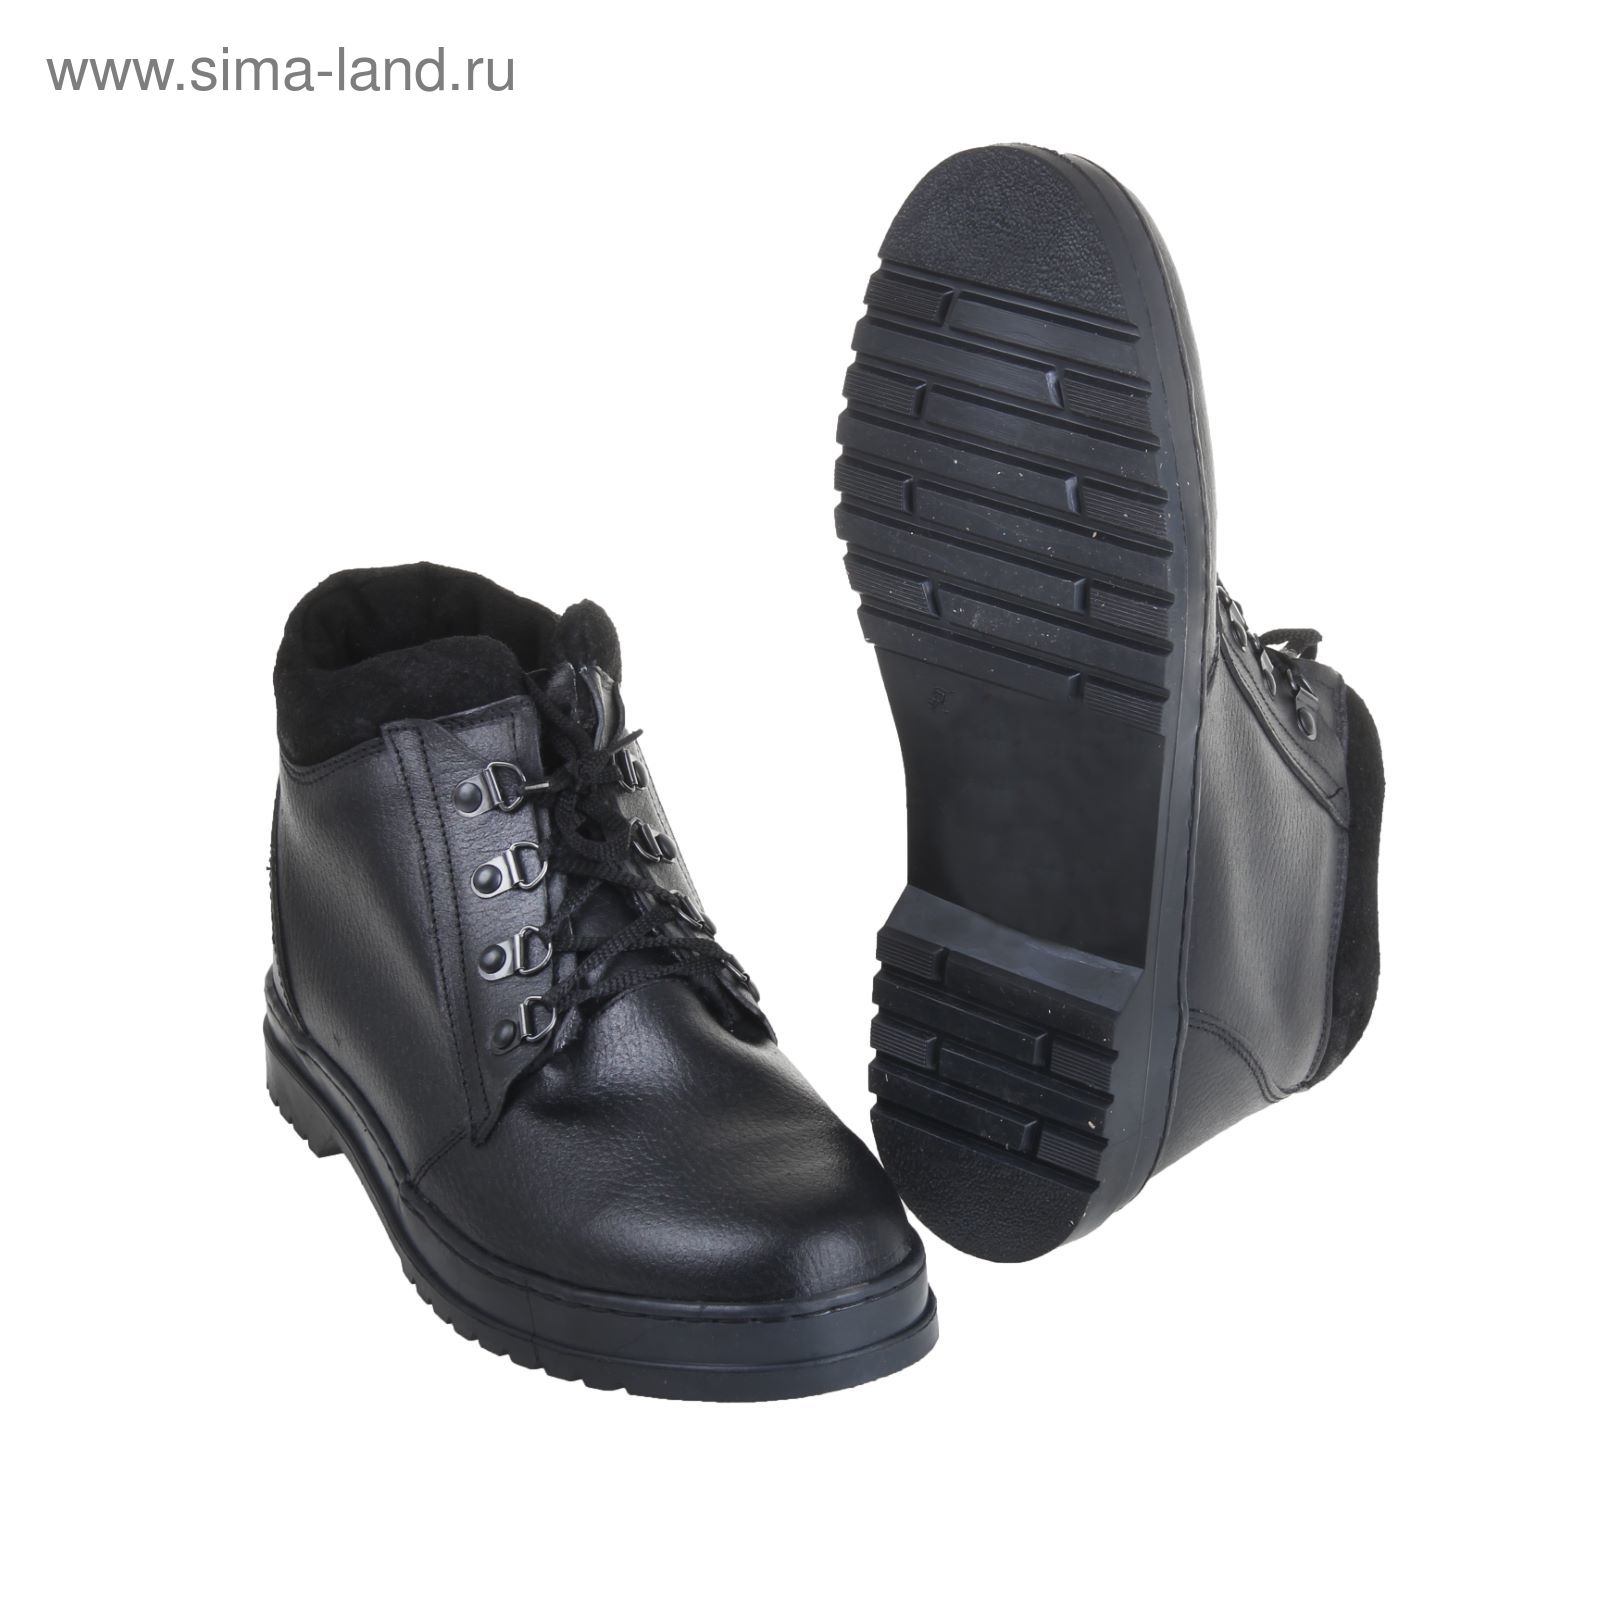 Военные ботинки "БМ-1/1",искуств. мех, зимние, размер-40